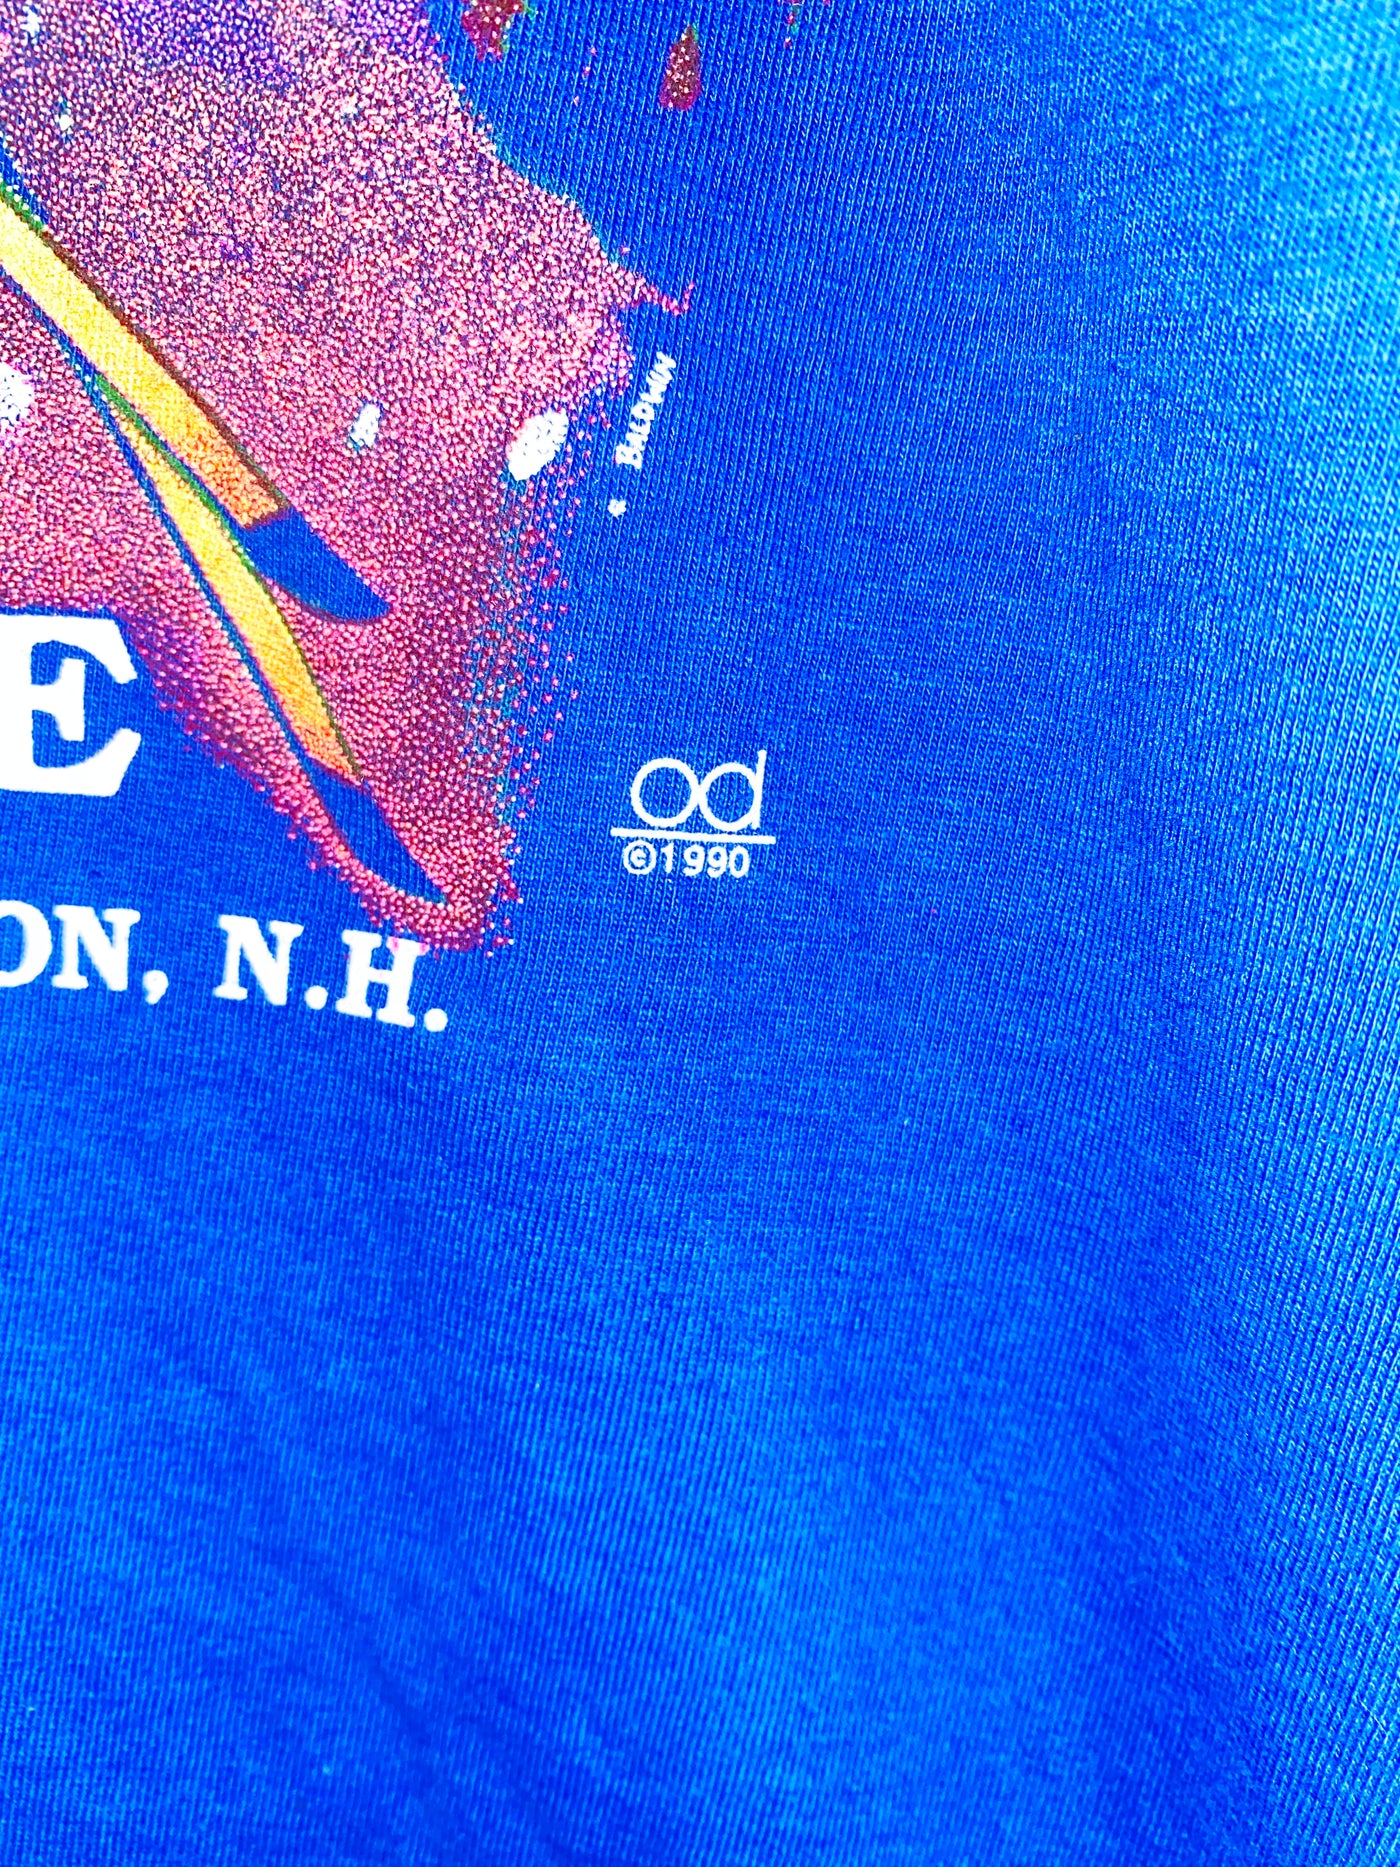 Vintage 1990 Mount Washington NH Ski Shirt